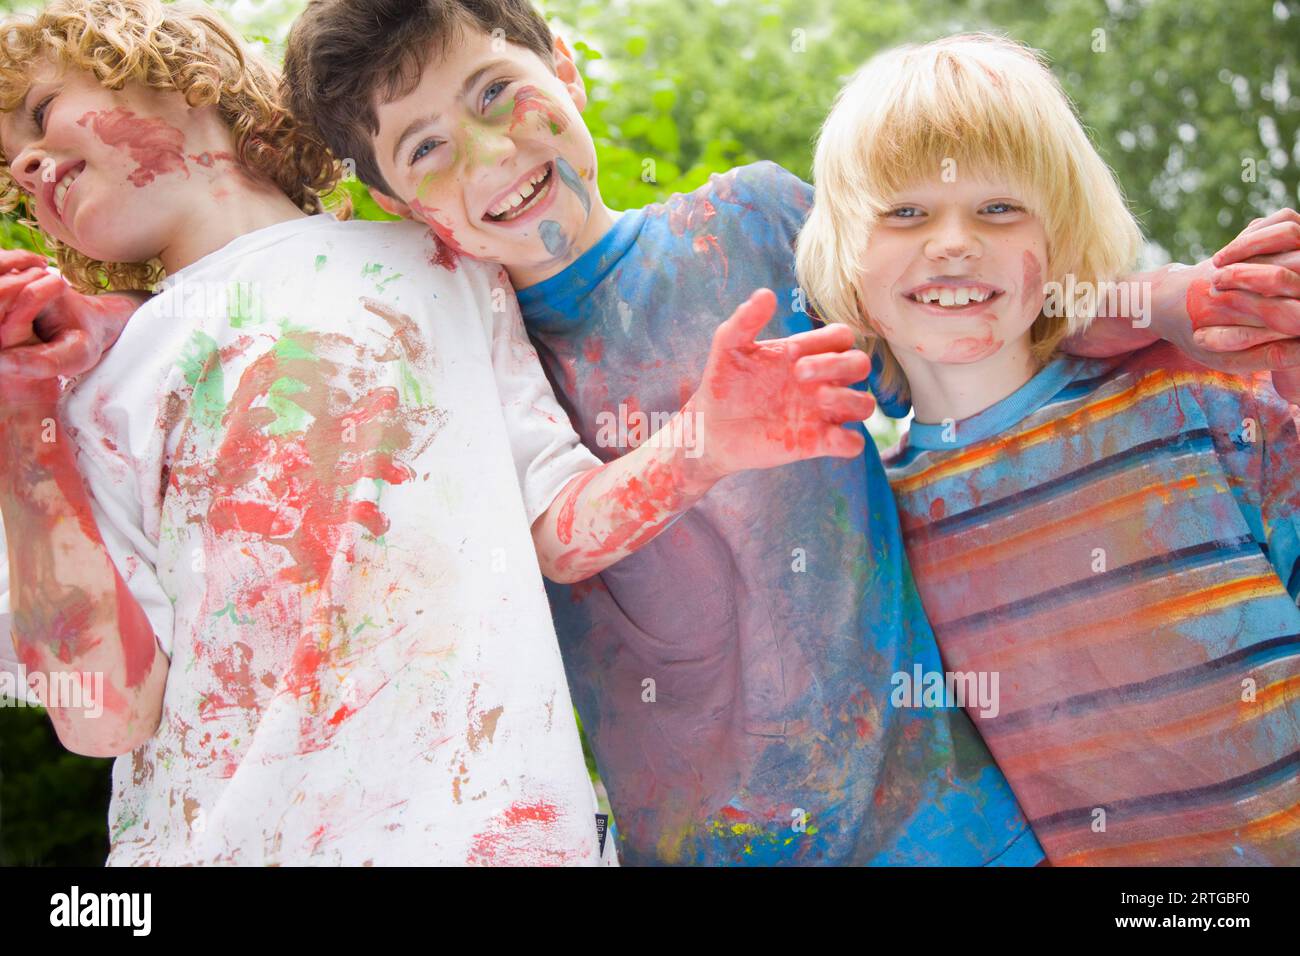 Jeunes garçons couverts de peinture aquarelle riant dans un jardin Banque D'Images